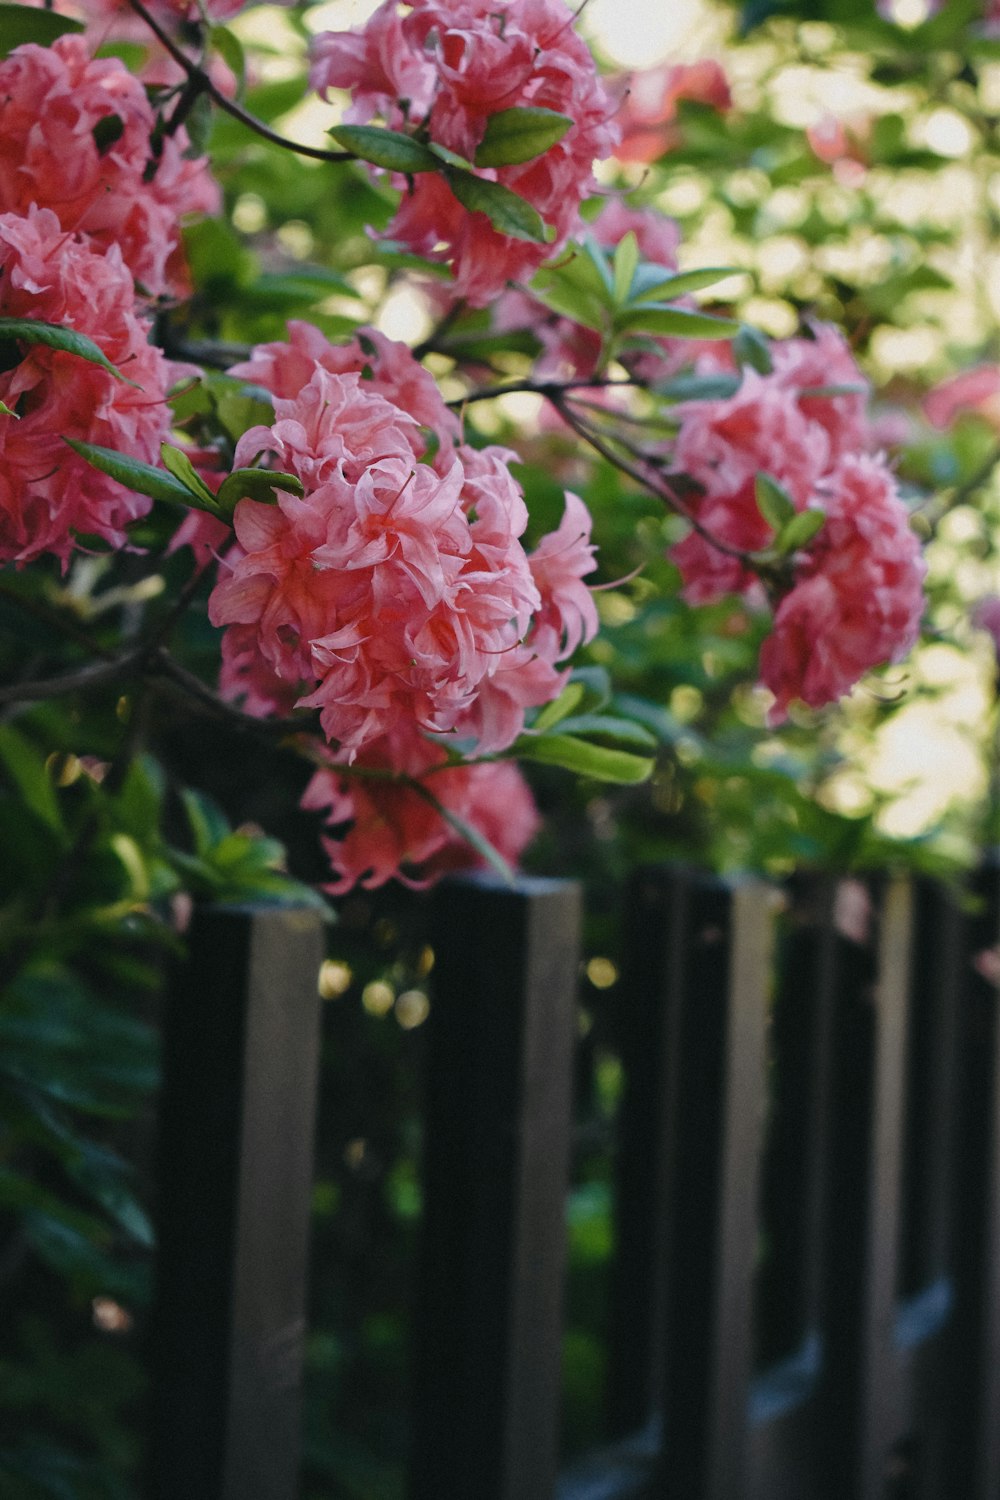 Rosa Blumen wachsen auf einem schwarzen Zaun